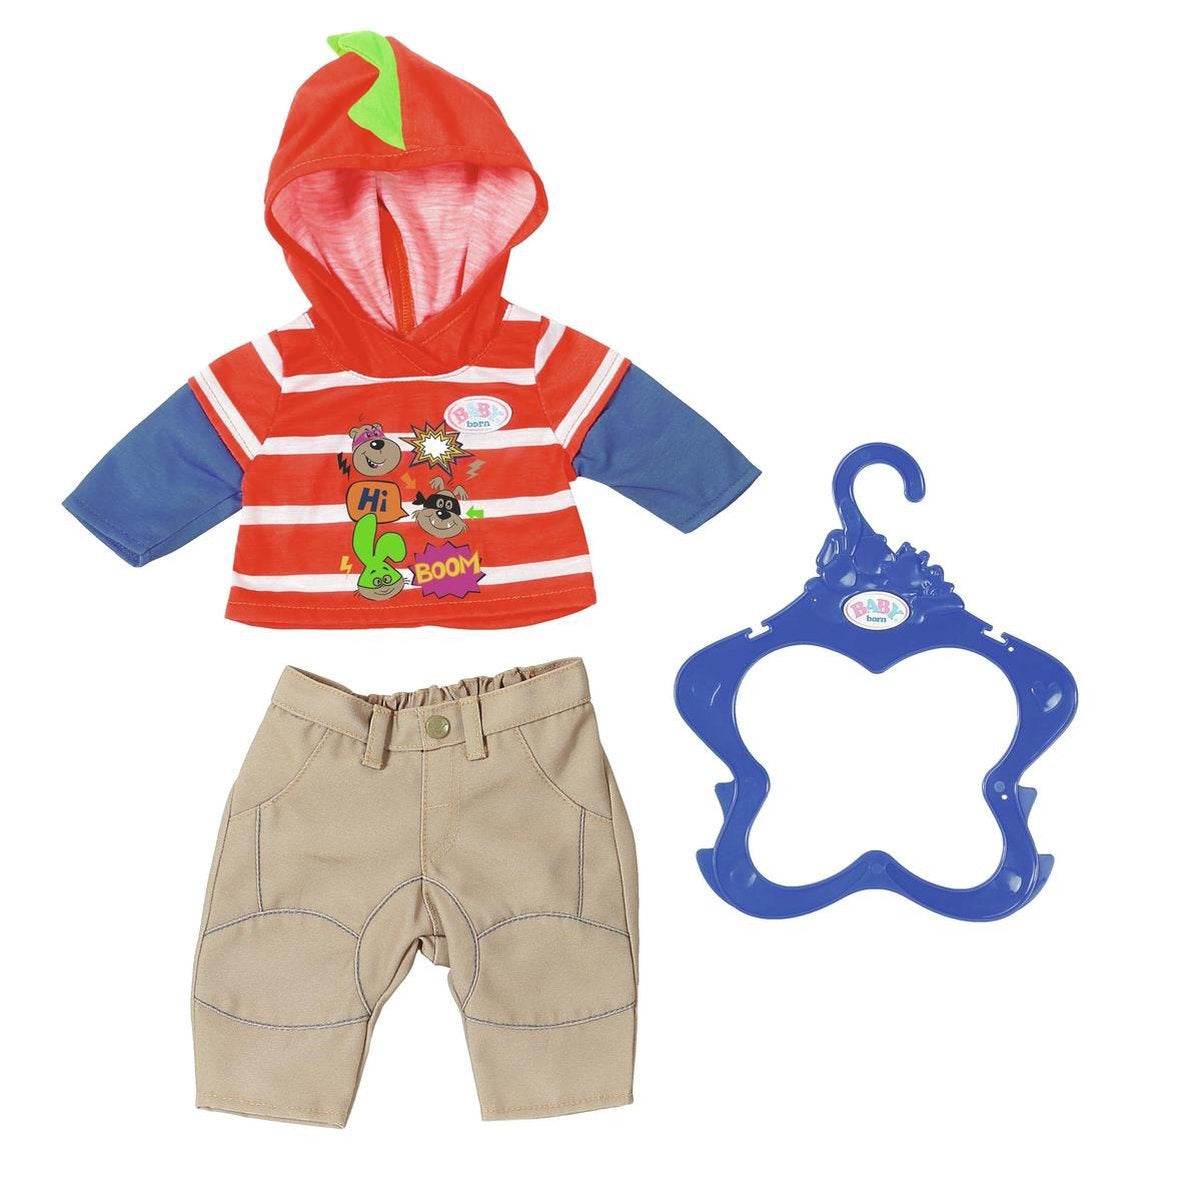 voorzichtig opwinding blaas gat Baby Born - Jongenscollectie - Oranje Wit gestreepte outfit